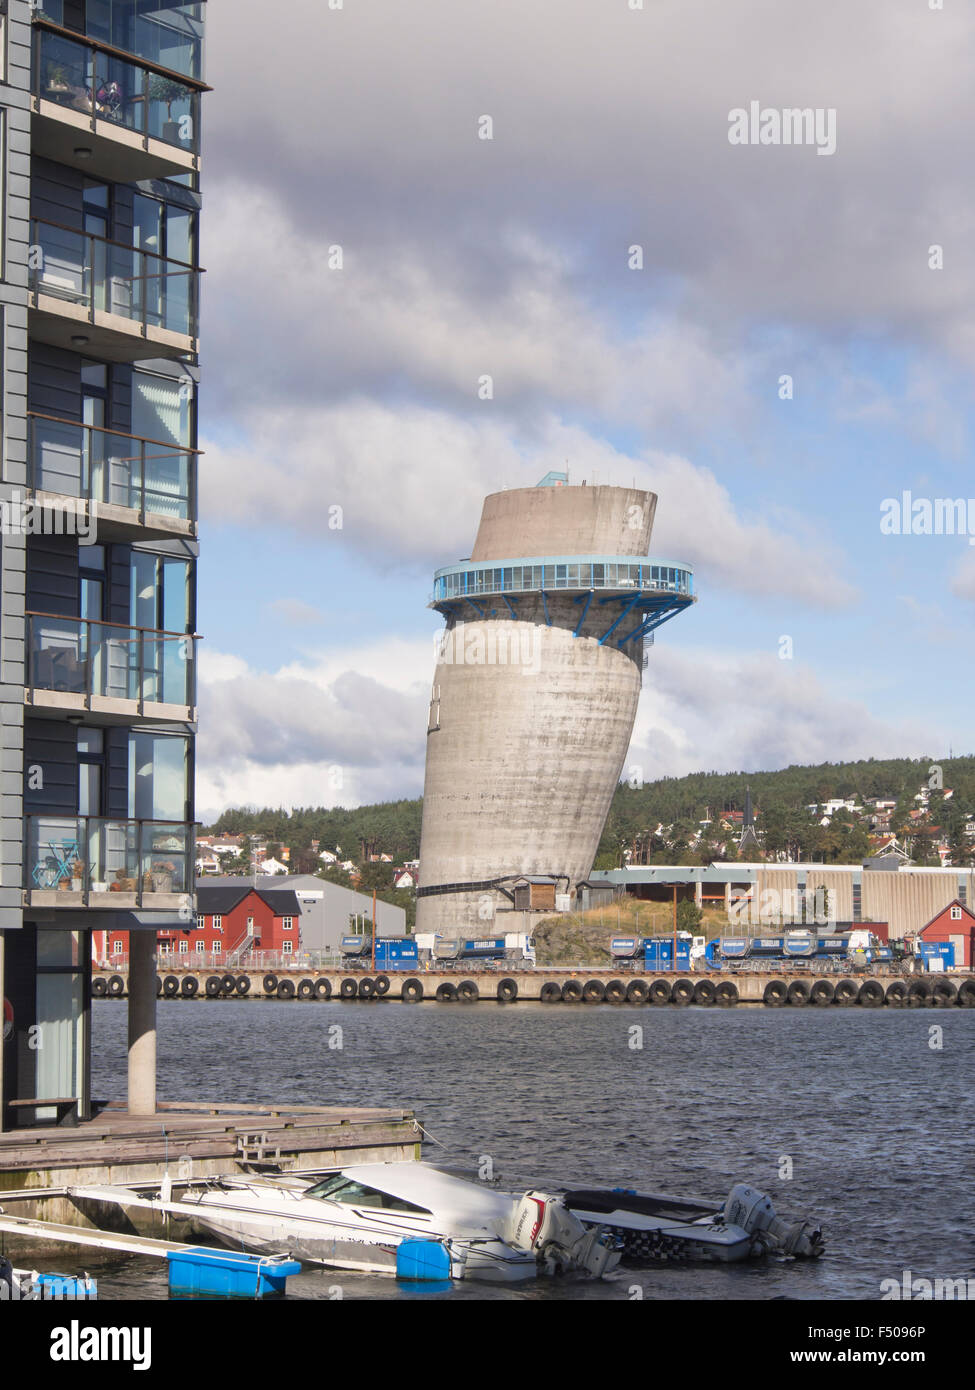 Jattavagen, Stavanger en Norvège, ancienne zone industrielle, la tour penchée, faite pour tester la construction de béton pour l'industrie de l'huile Banque D'Images